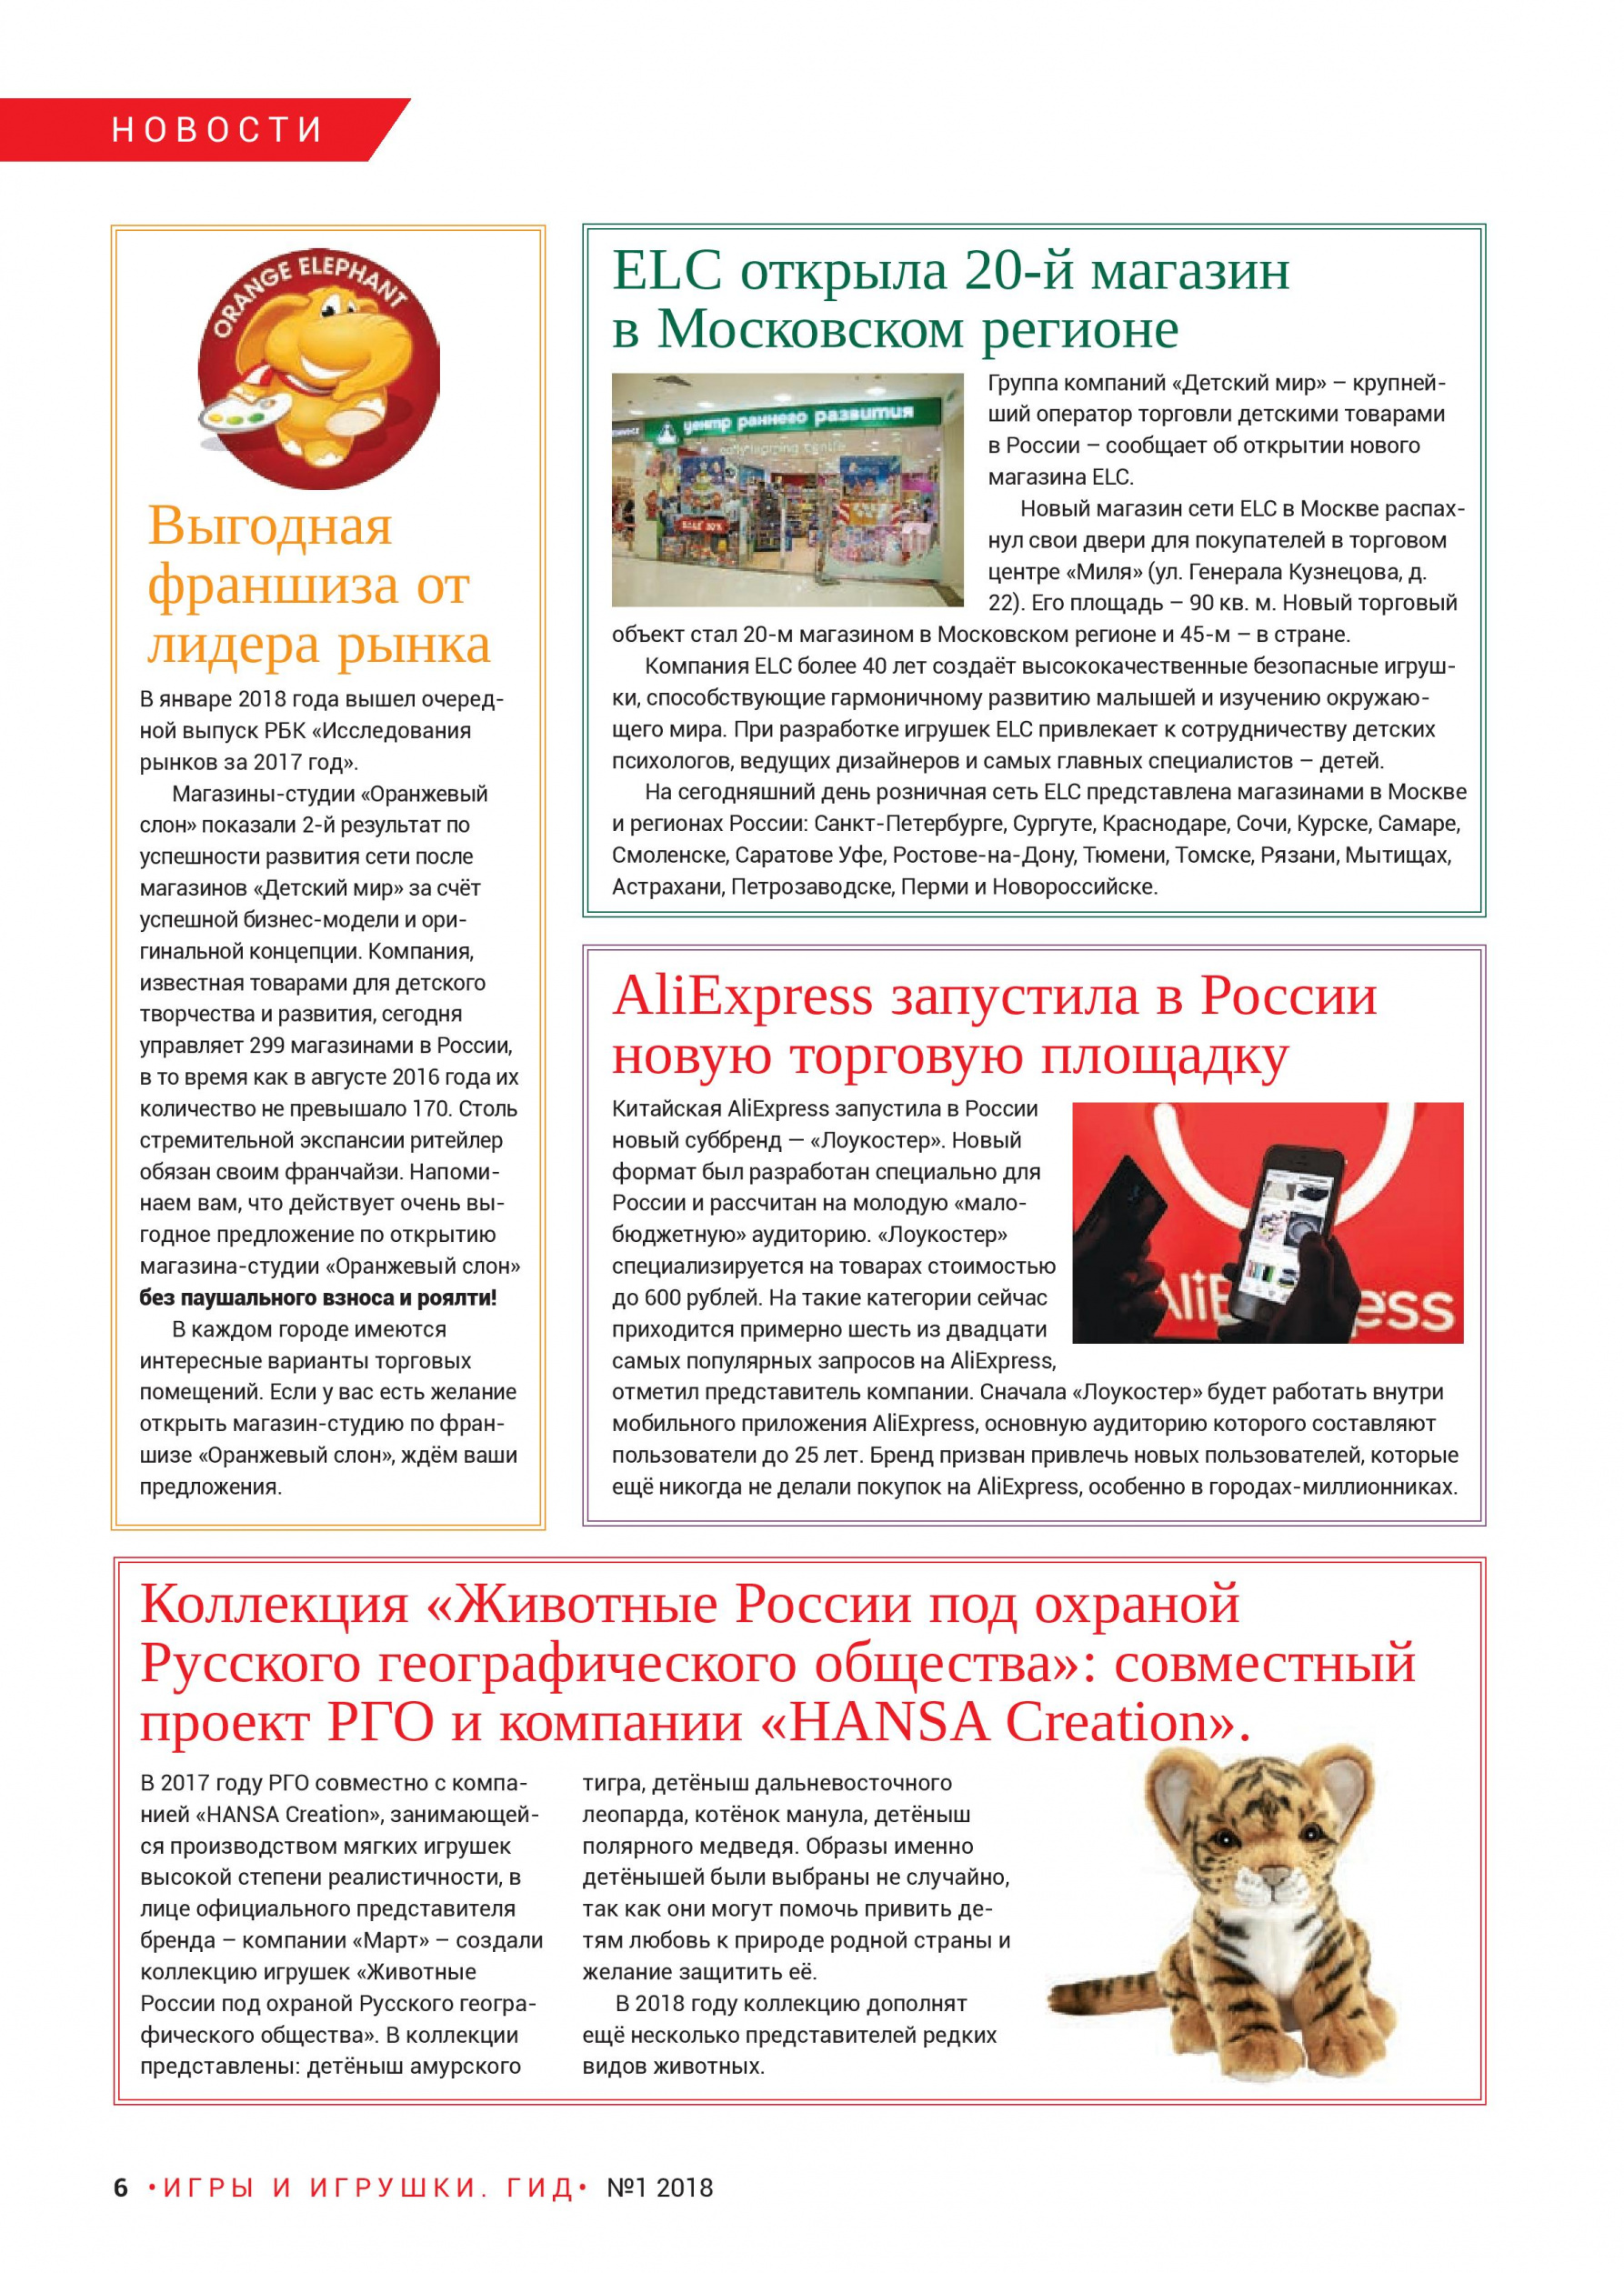 «Животные России под охраной Русского географического общества»